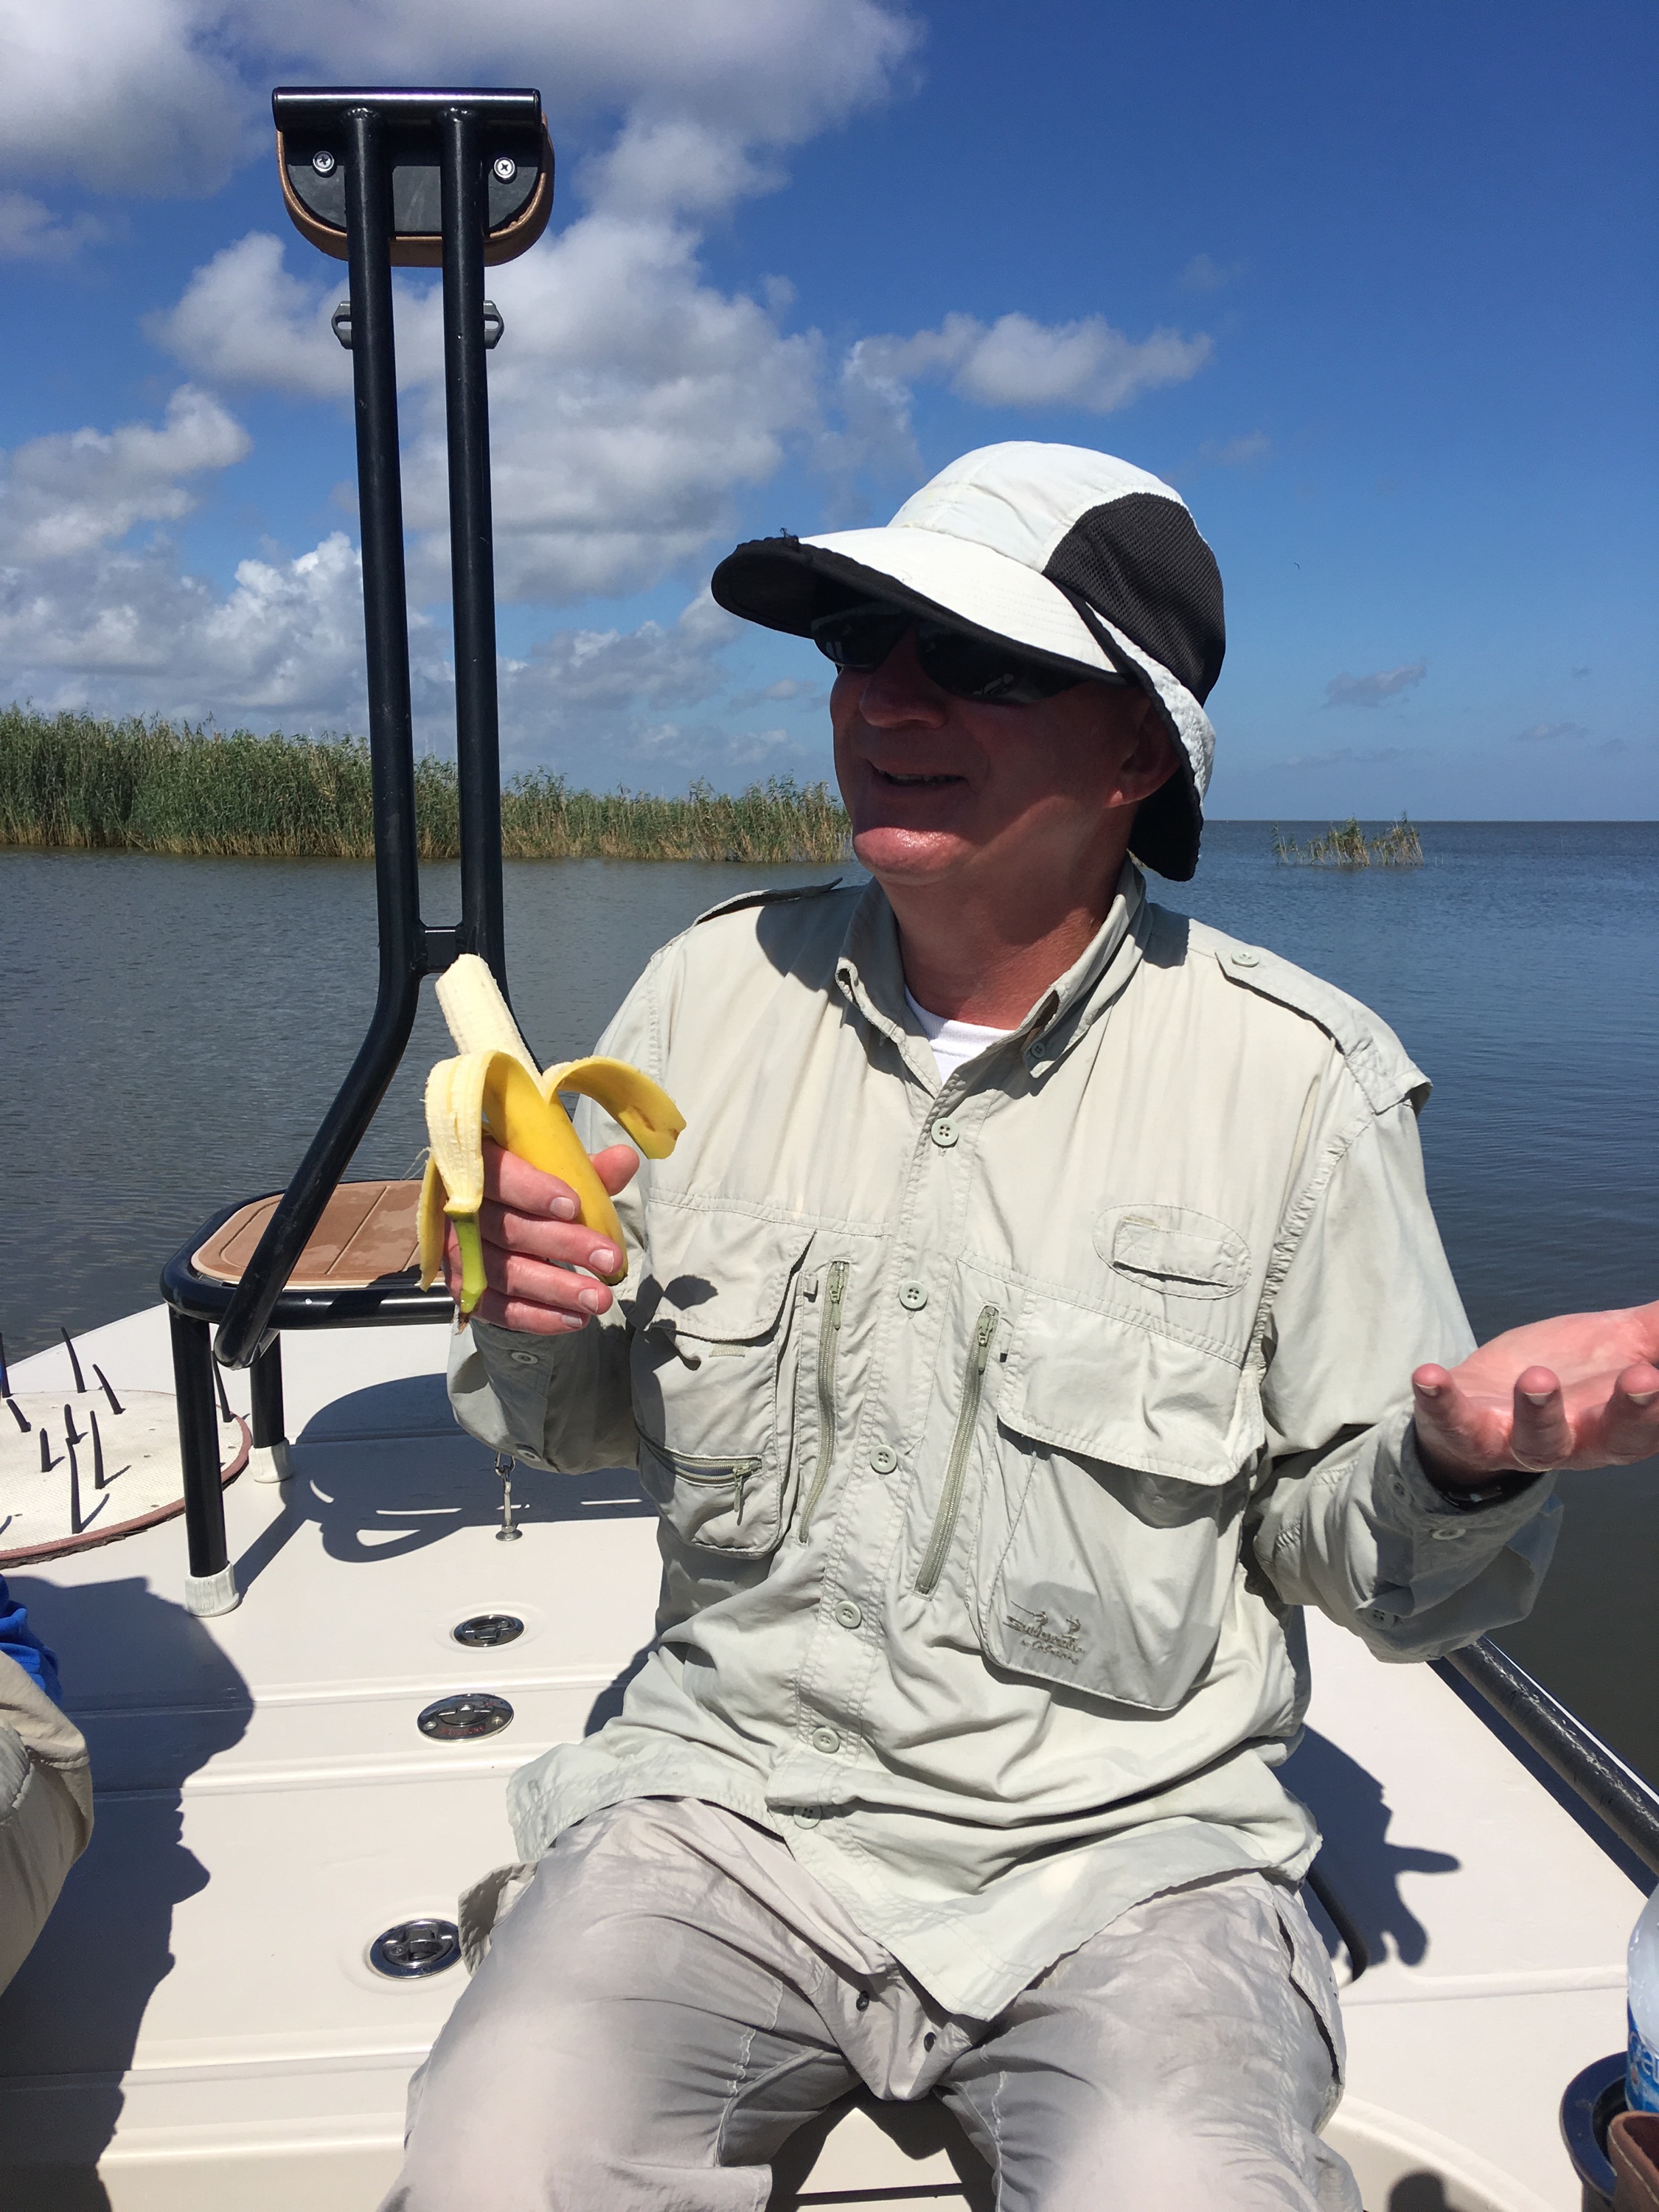 Enjoying a banana during the boat ride